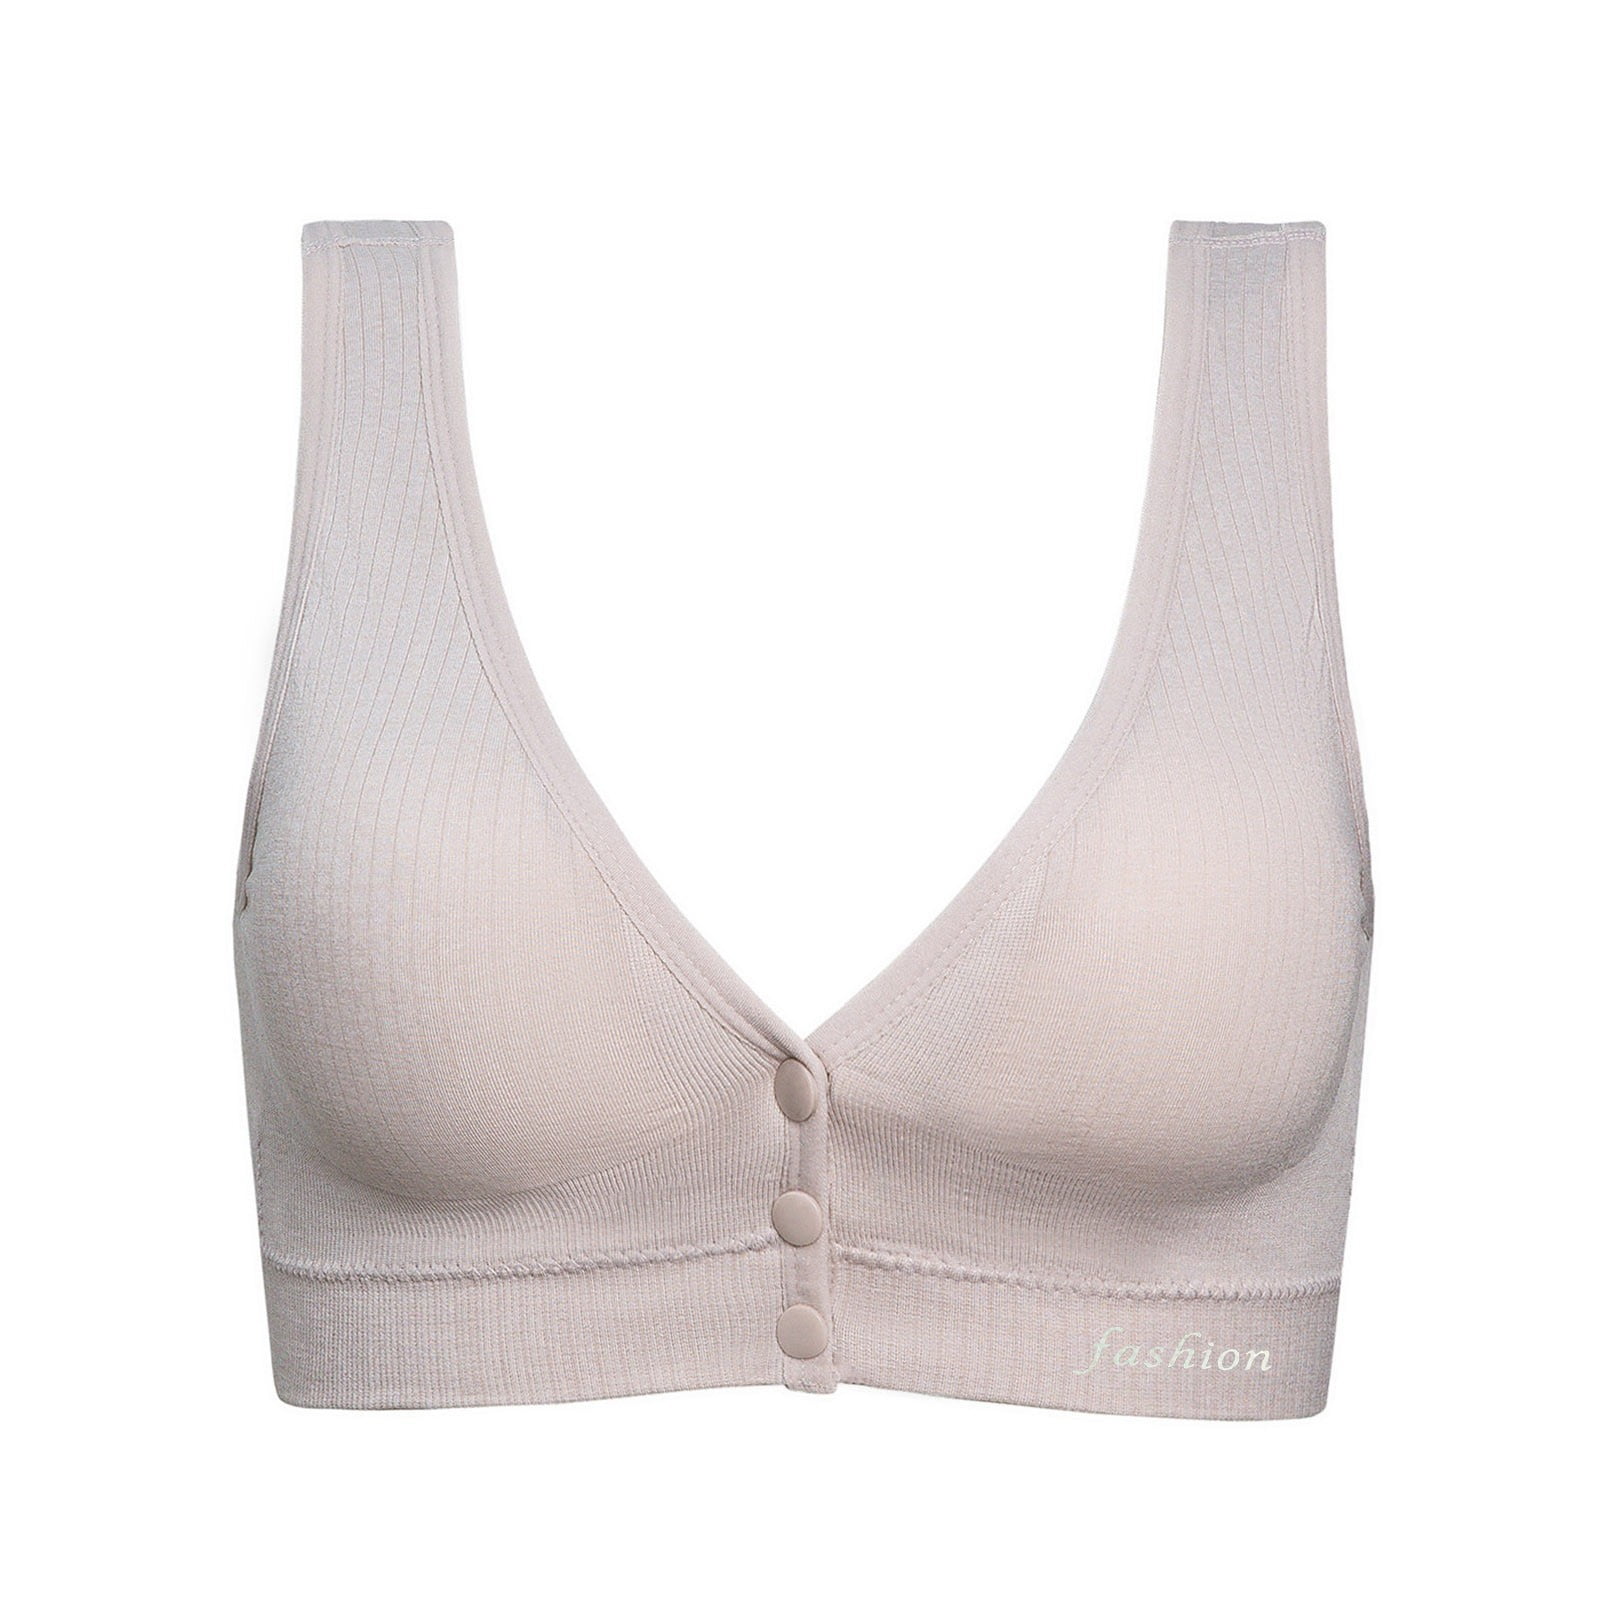 MRULIC bras for women Pregnant Women's Plain Color Bra Maternity Nursing  Bras Vest Tops Beige + M 